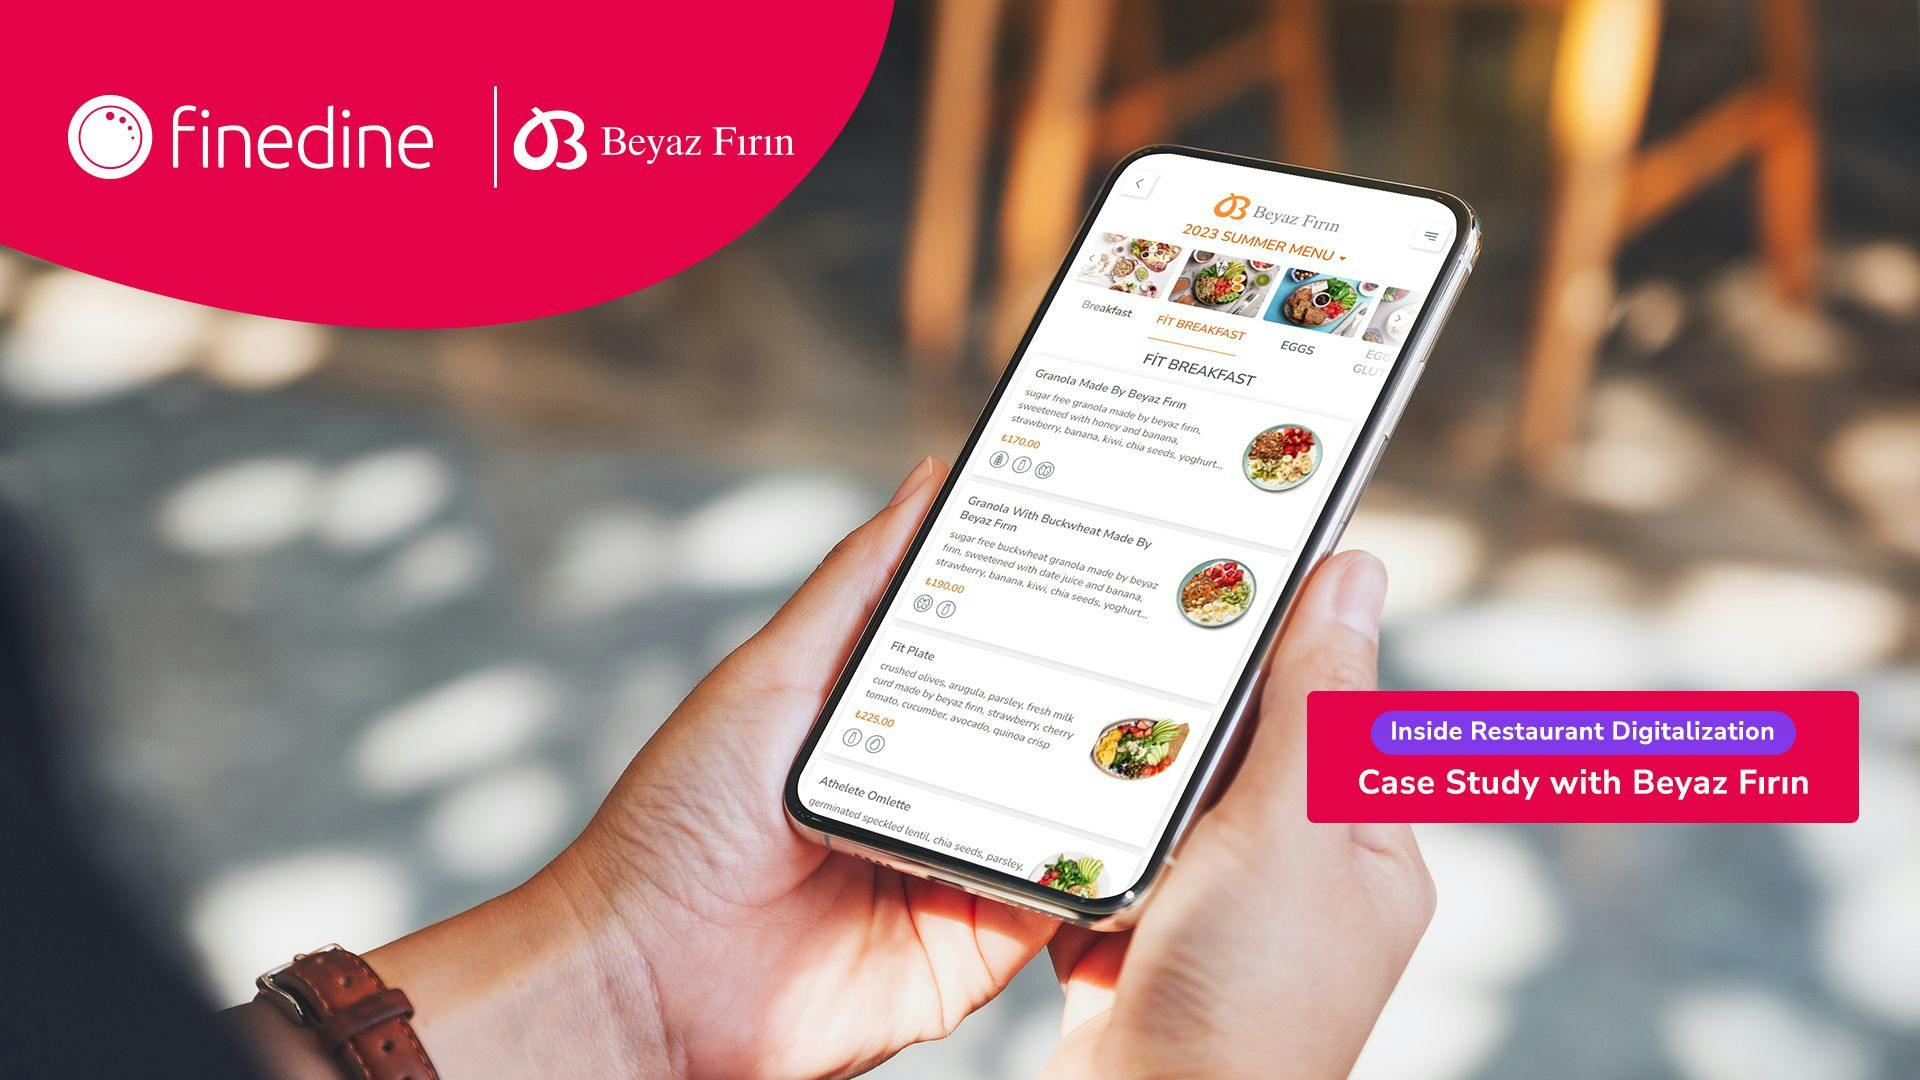 Beyaz Fırın's Case Study with FineDine All-In-One Restaurant Management Platform